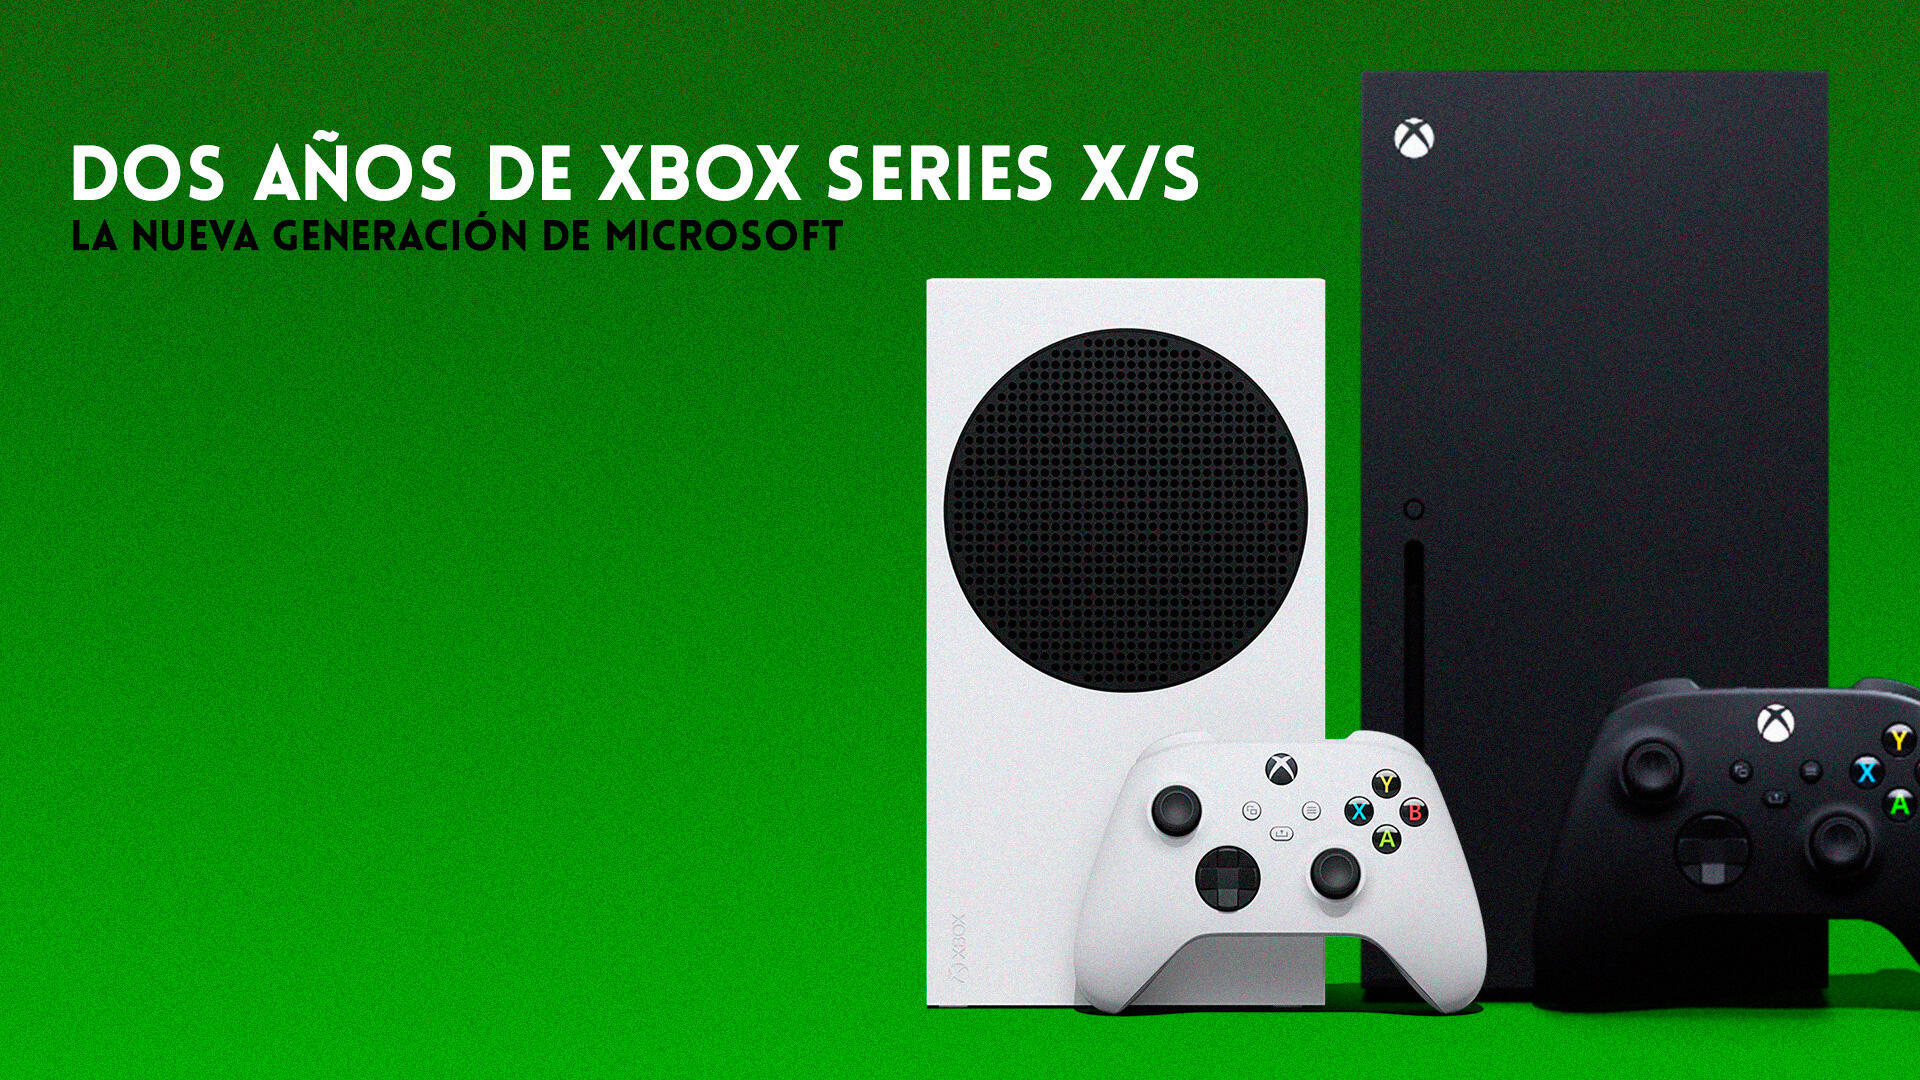 Dos años de Xbox Series X/S: le ha a nueva generación de Microsoft?